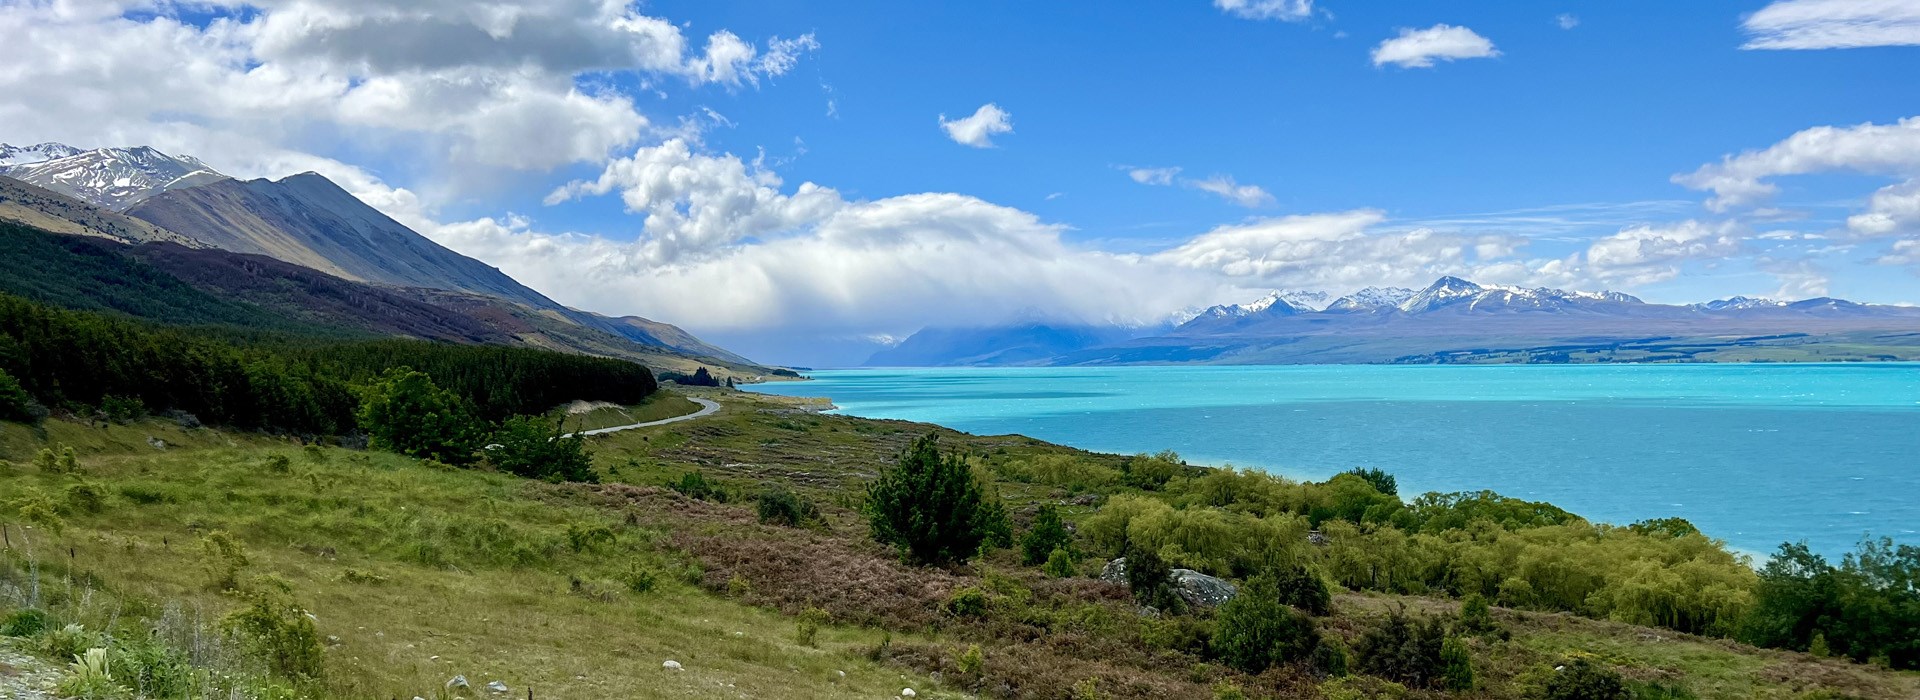 Visiter Le lac Pukaki - Nouvelle Zelande